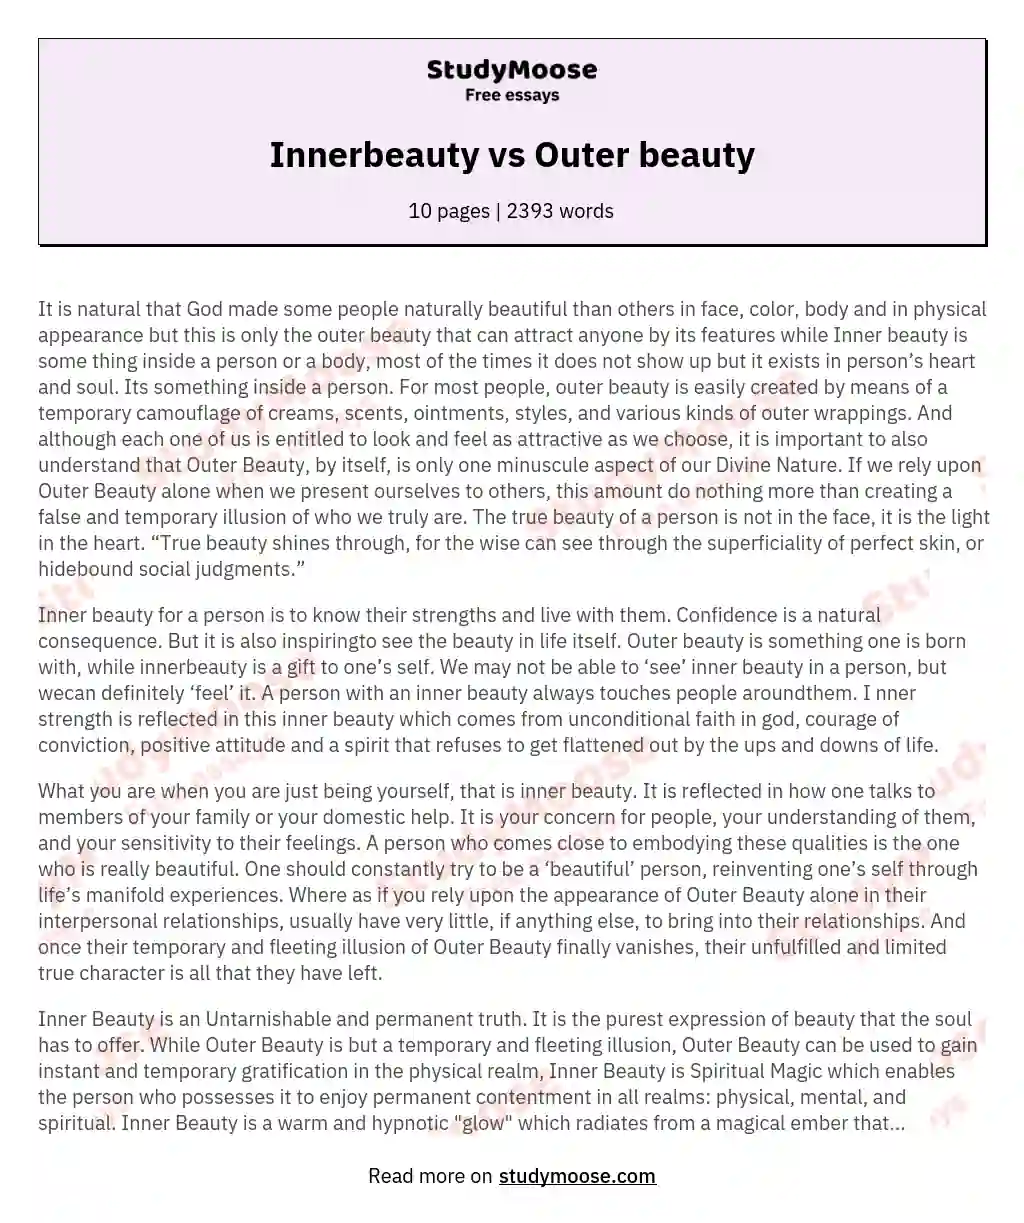 Innerbeauty vs Outer beauty essay